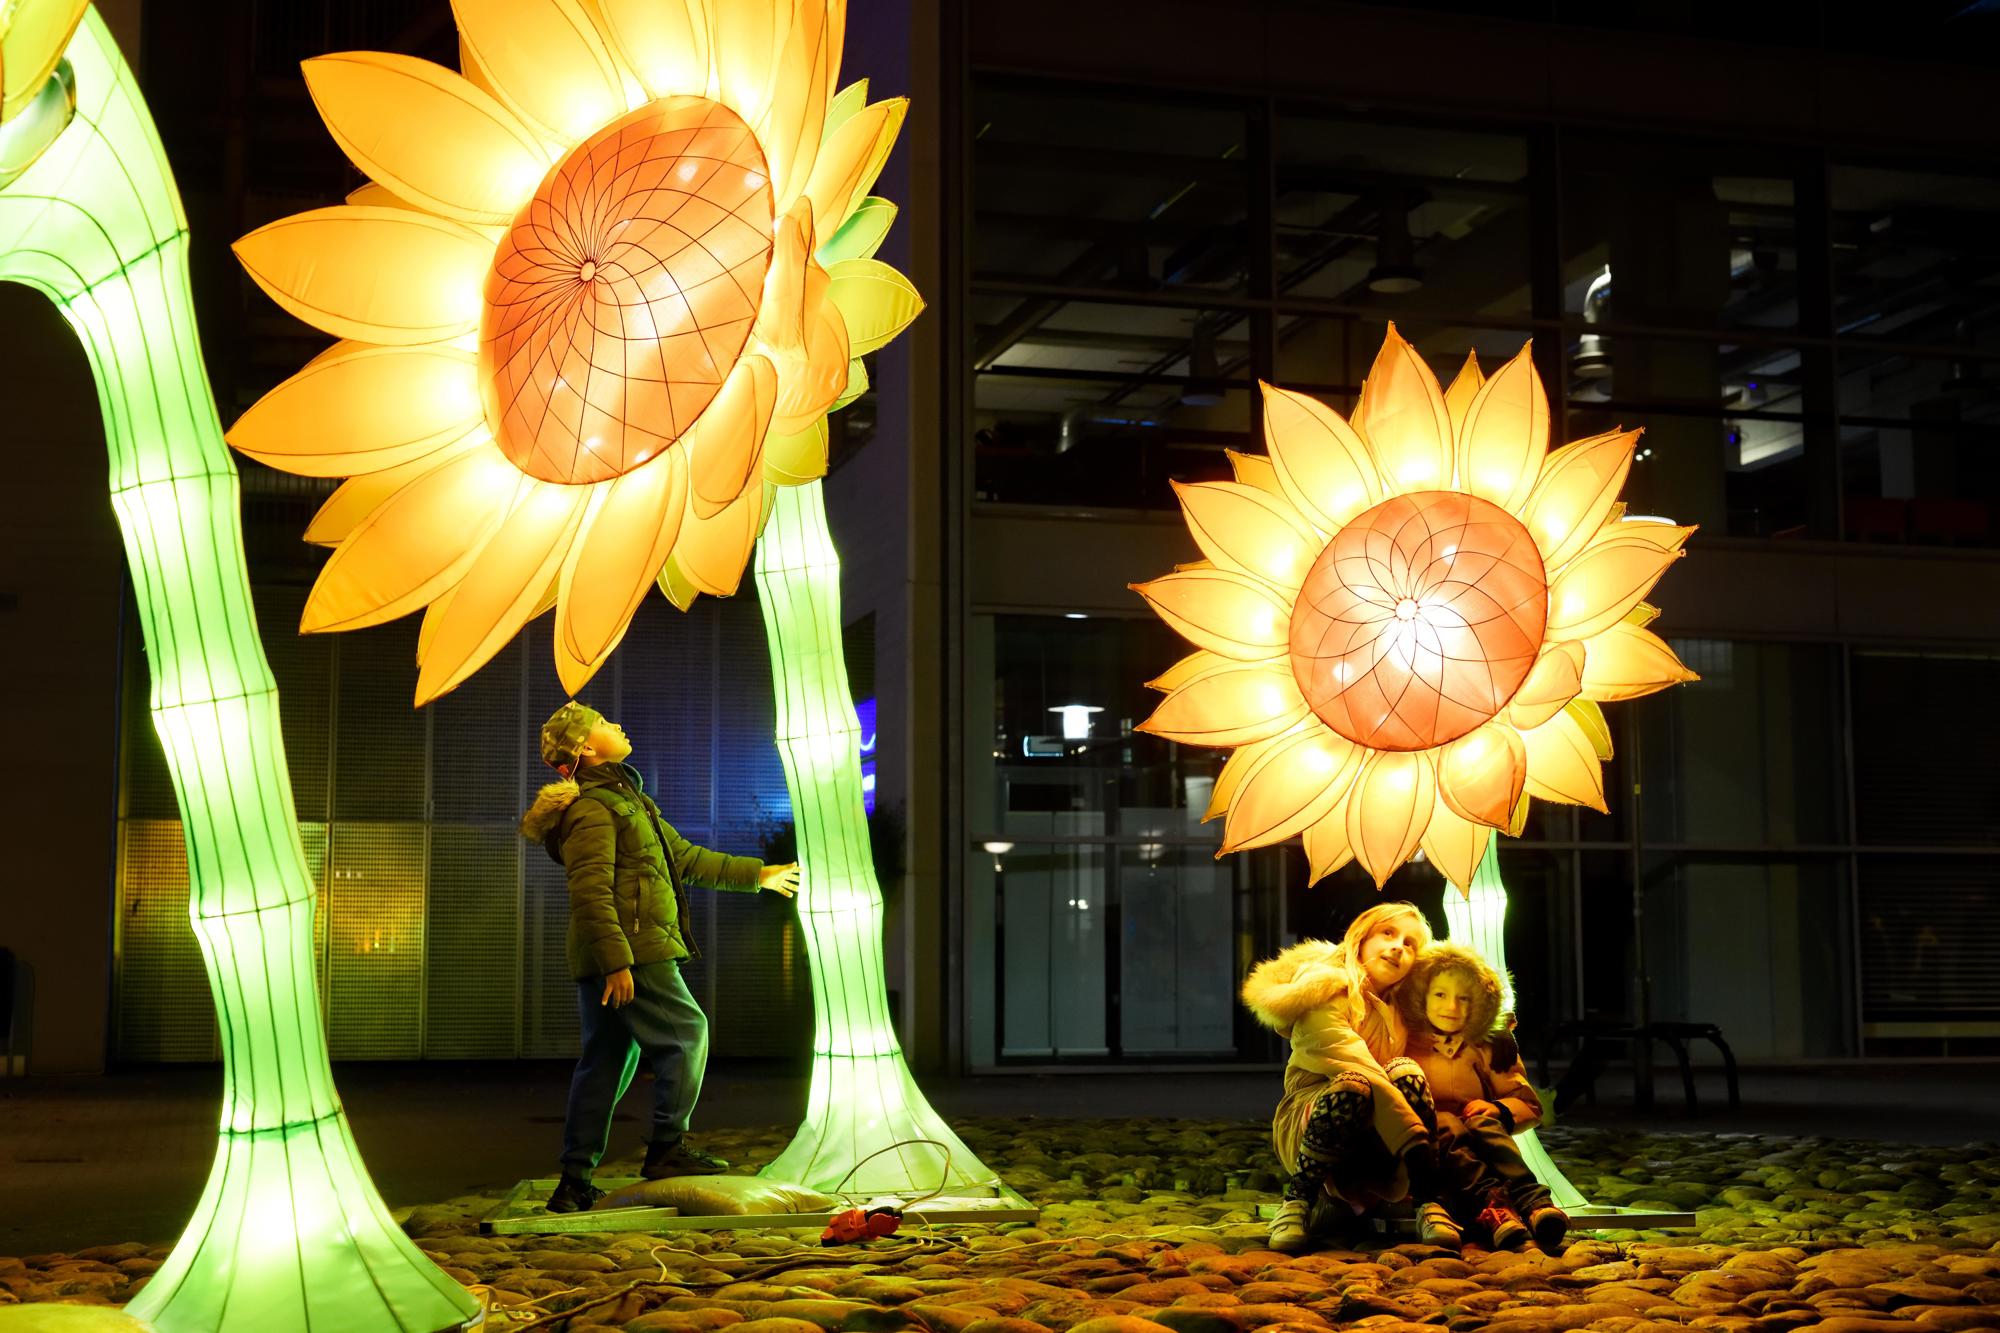 Jedes Jahr verwandeln Künstler Eindhoven mit überraschendem Design in GLOW: eine stadtweite Ausstellung von Lichtkunst unter freiem Himmel